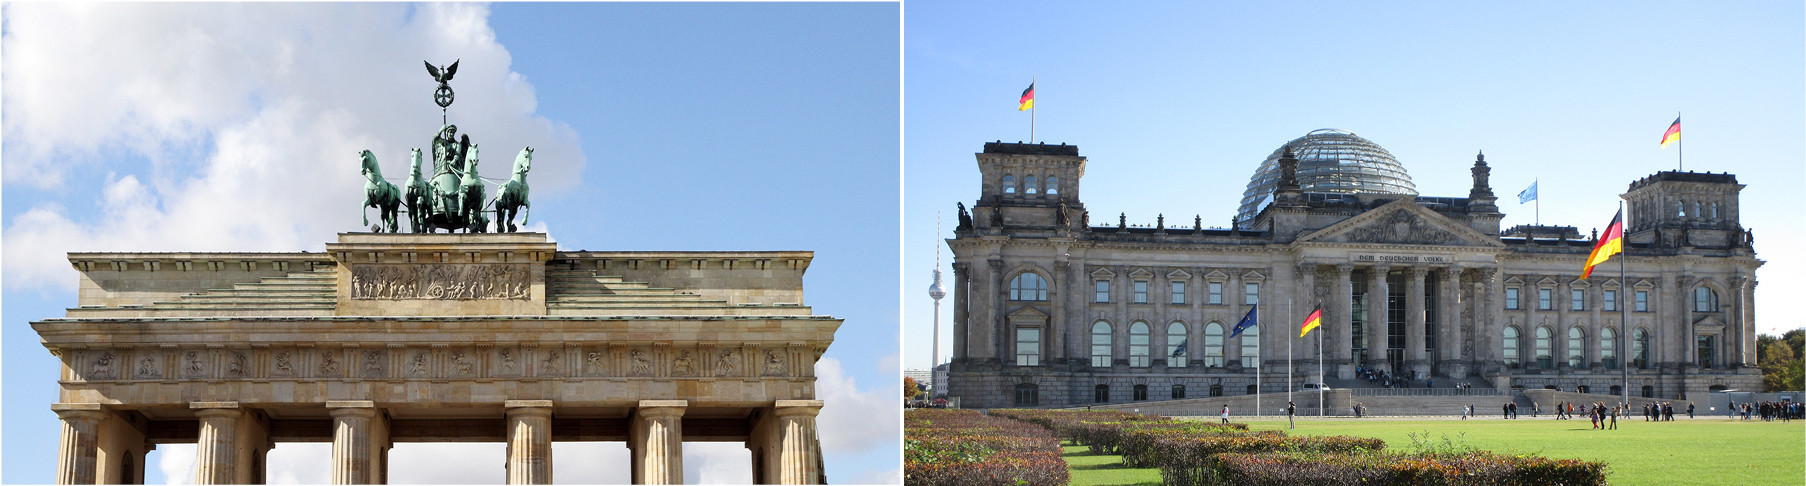 Brandenburg-Gate-Reichstag-Building